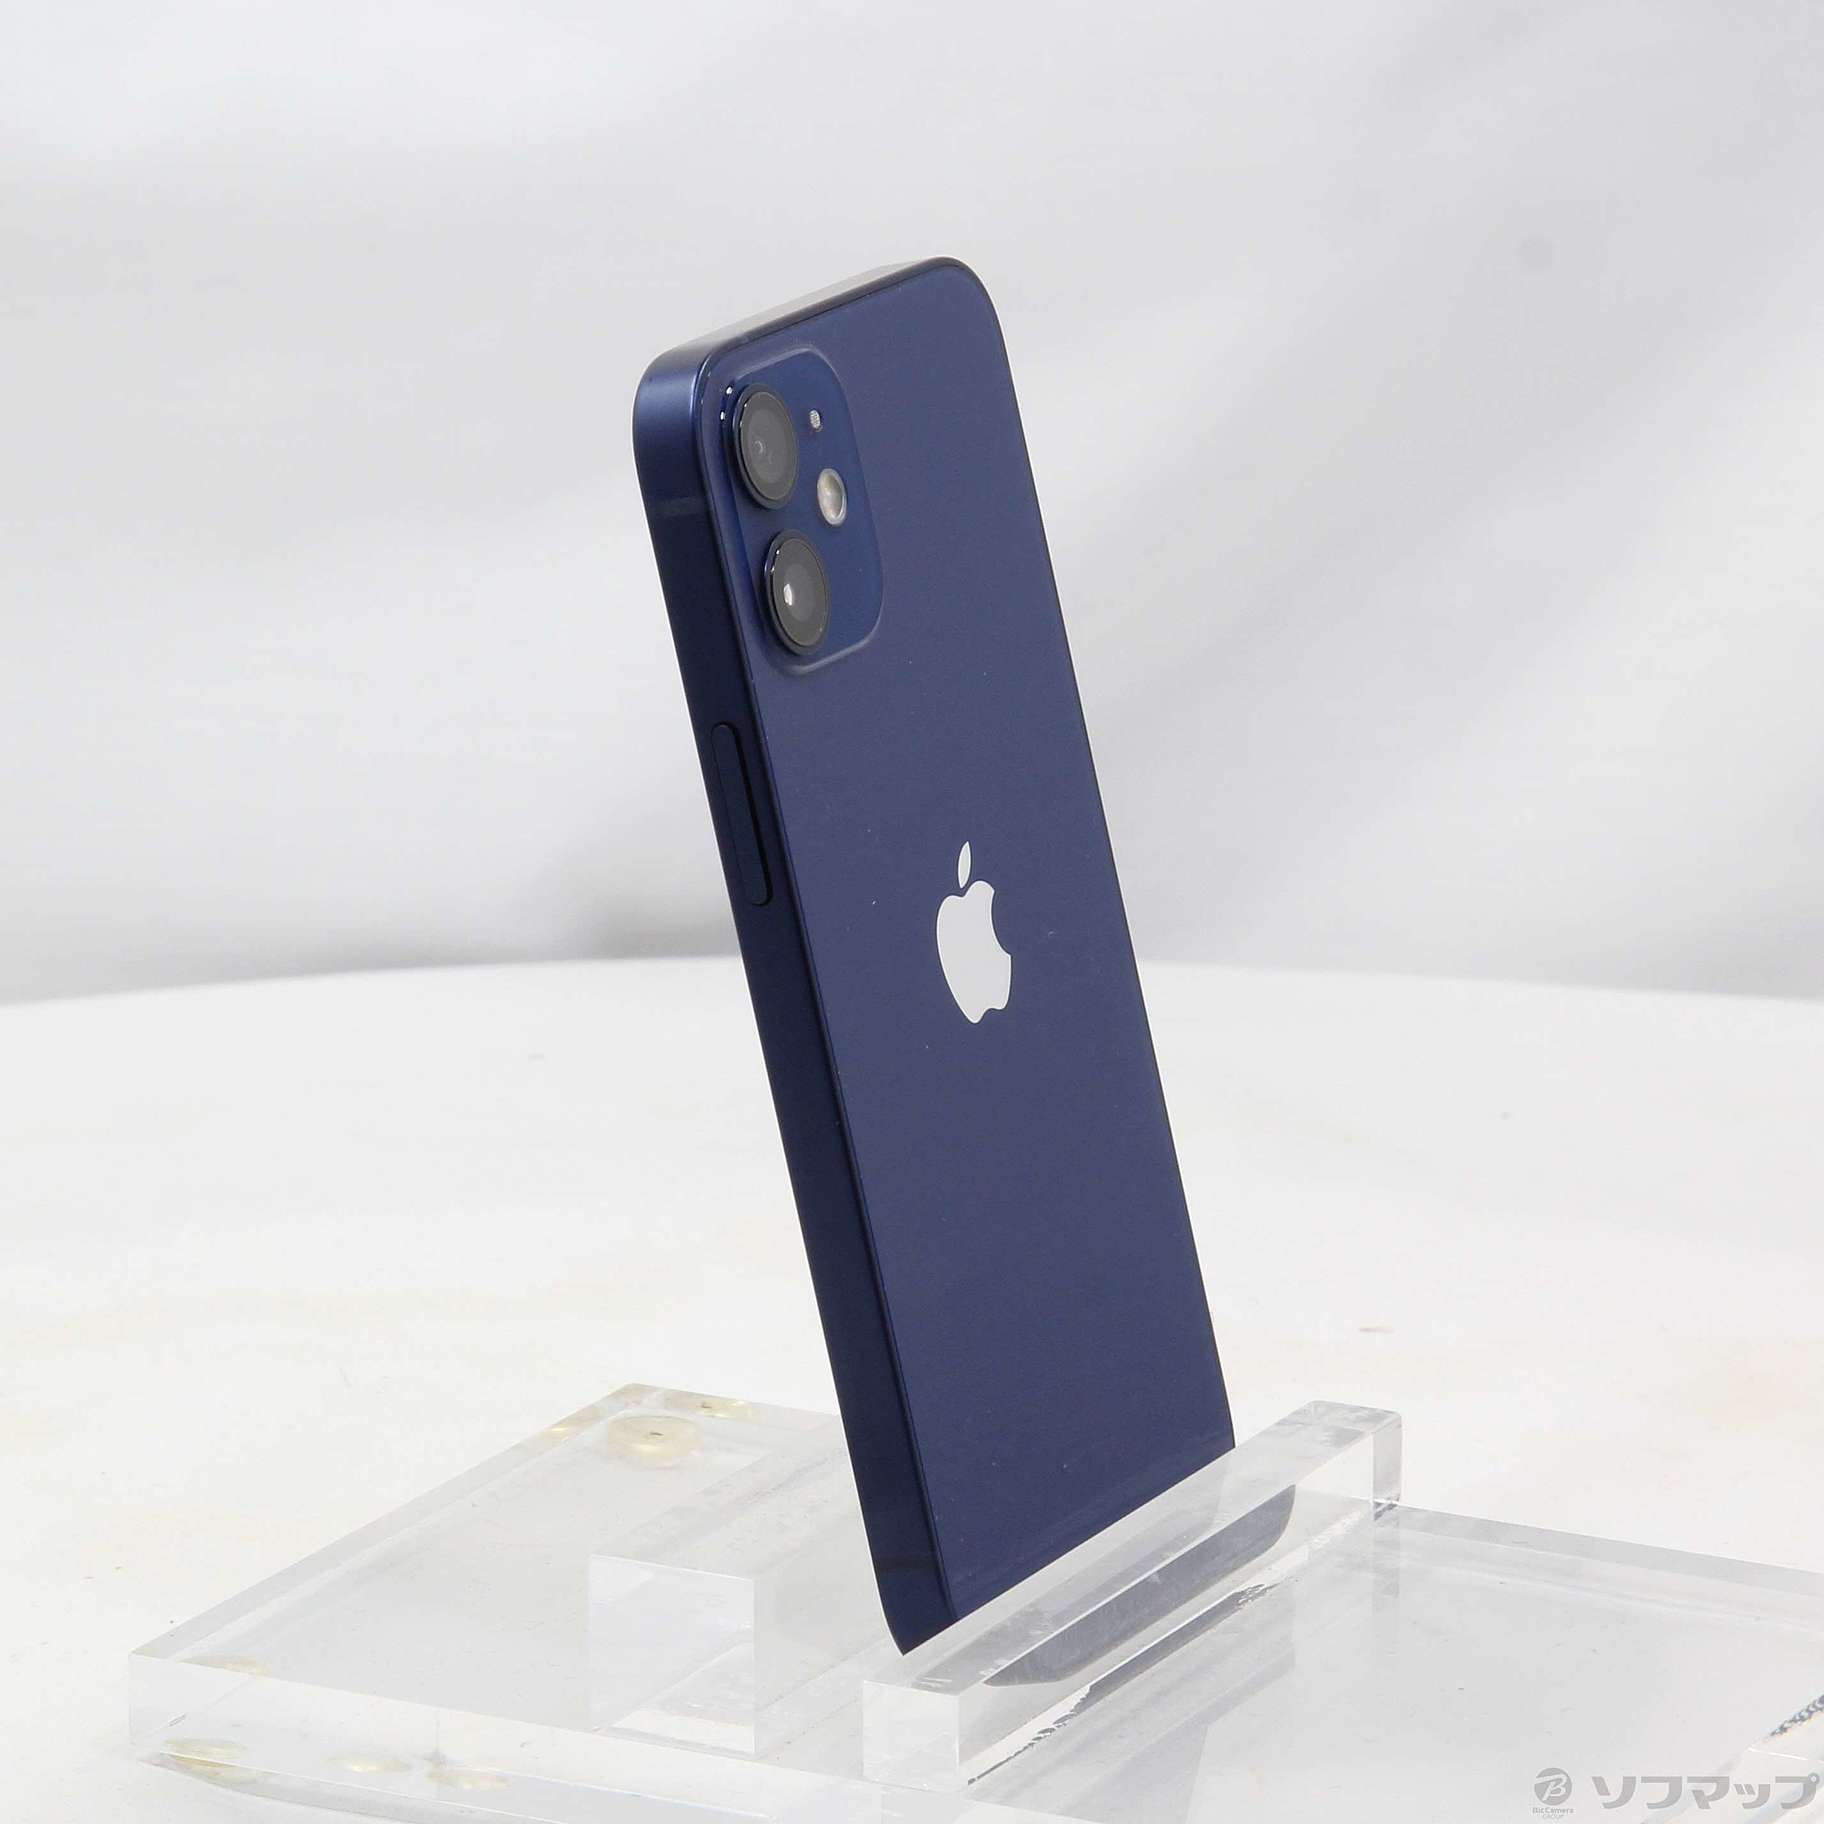 iPhone12 mini  64GB simフリー MGAP3J/A ブルー